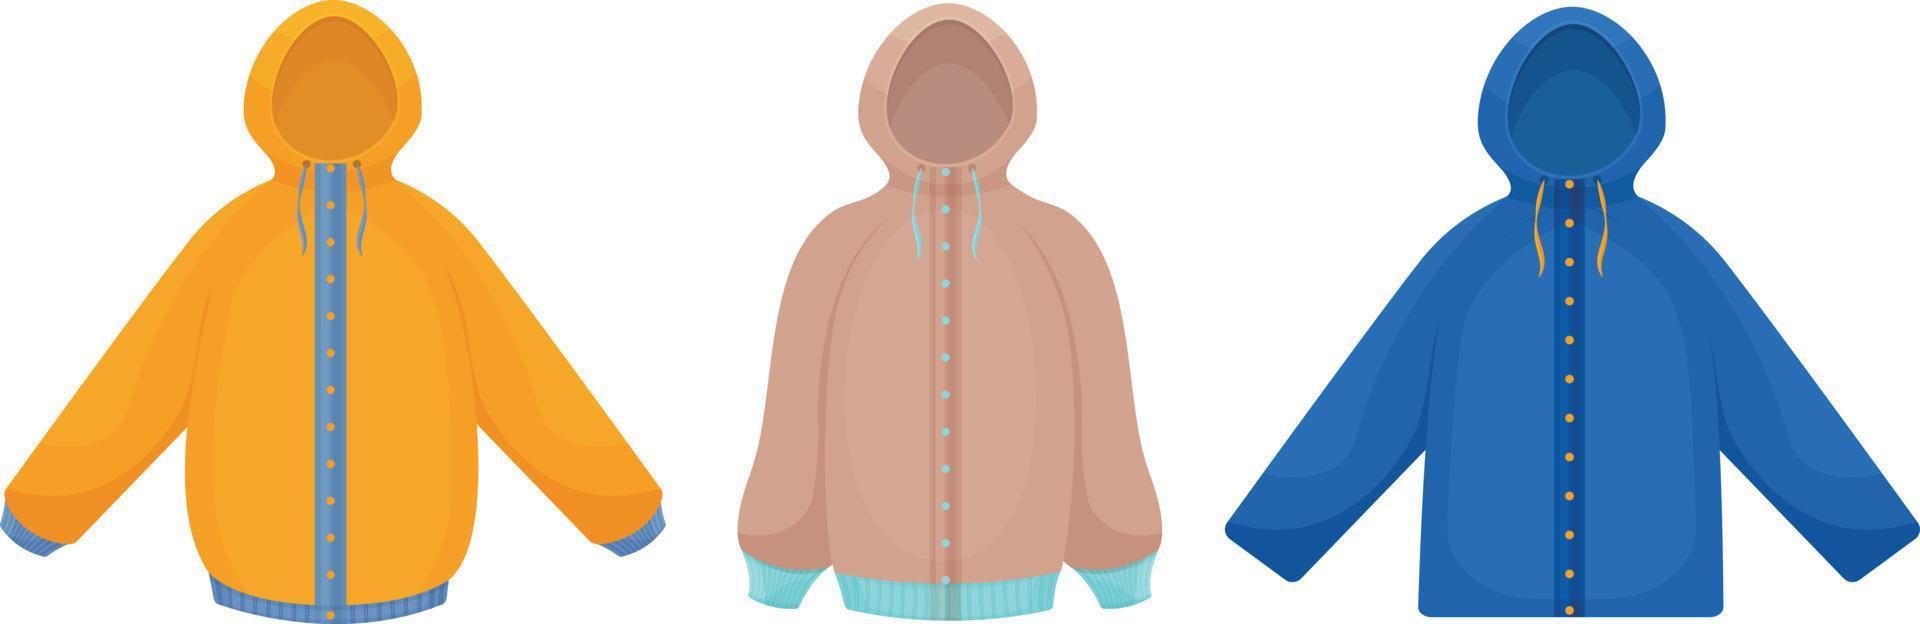 Jacken für Herbst- und Winterspaziergänge in verschiedenen Farben und Styles. ein Satz von drei Jacken. Jugendoberbekleidung zum Wandern und Sport. Vektor-Illustration vektor